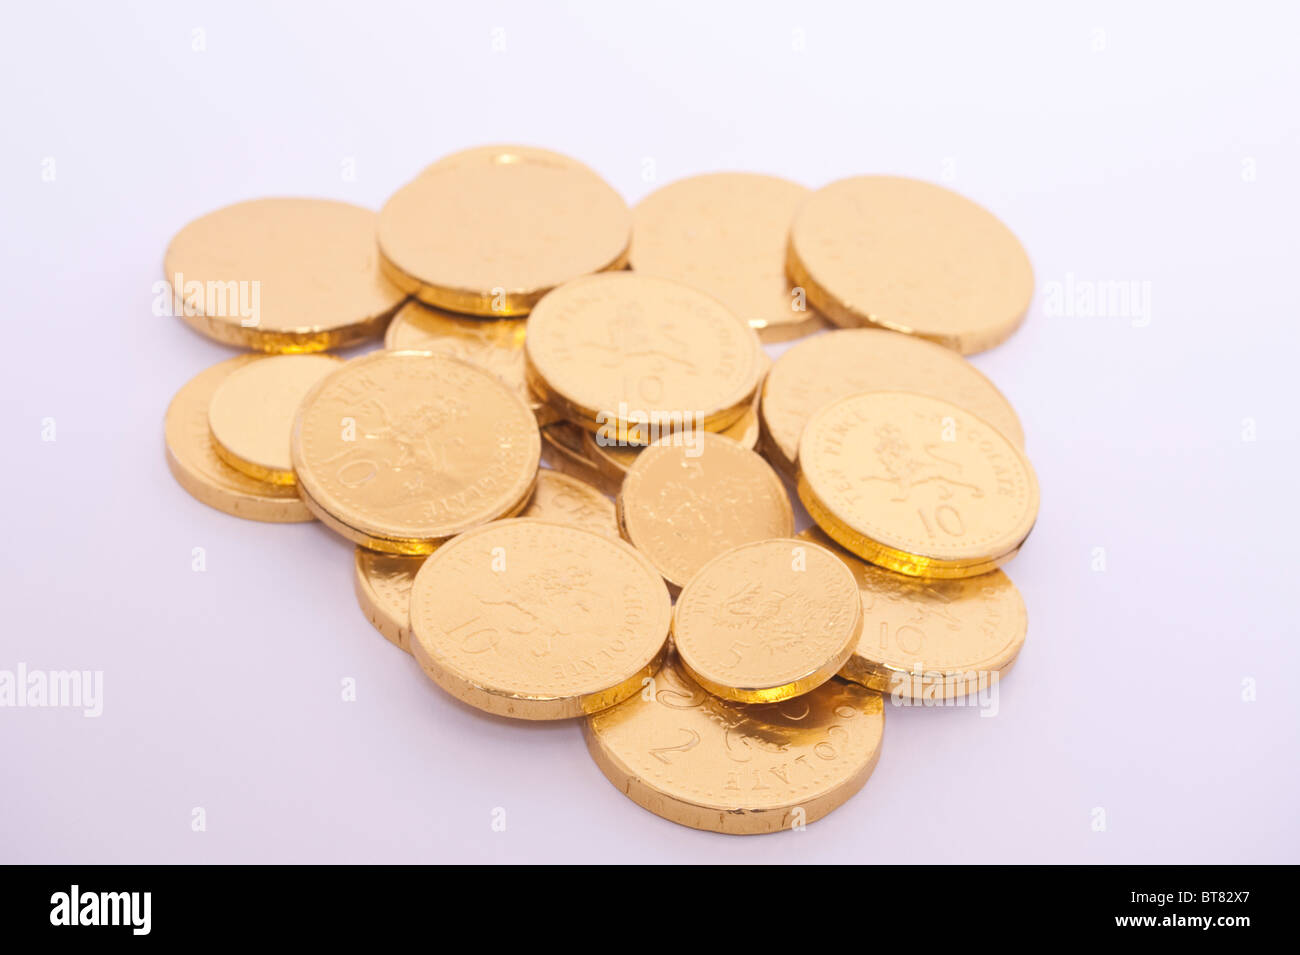 Una foto de algunas monedas de chocolate de oro sobre un fondo blanco. Foto de stock